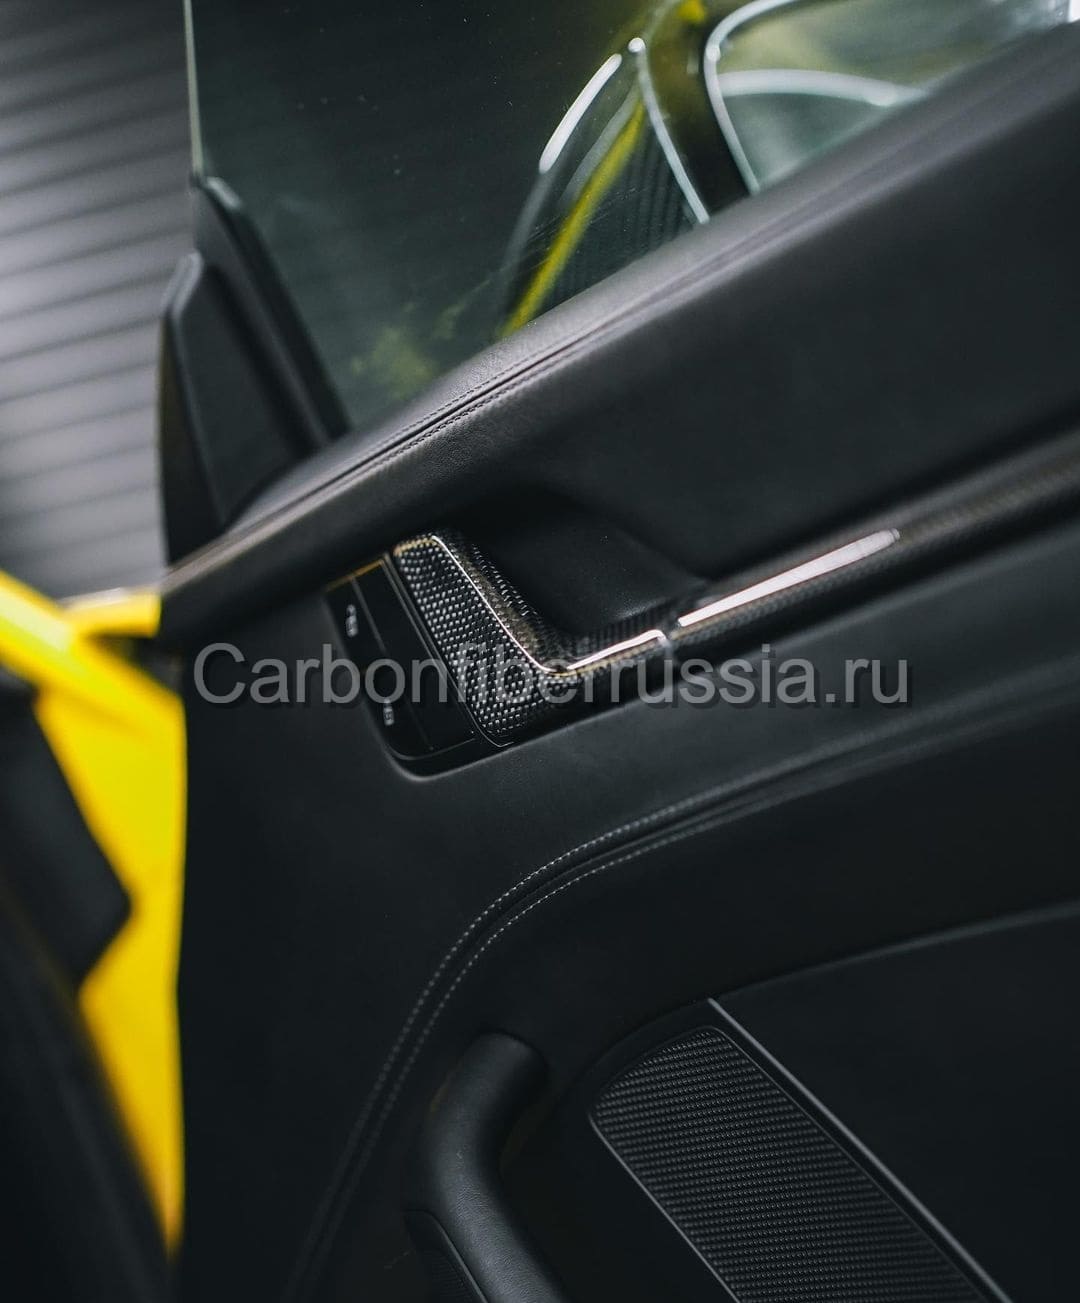 Карбоновый руль | CarbonFiberRussia